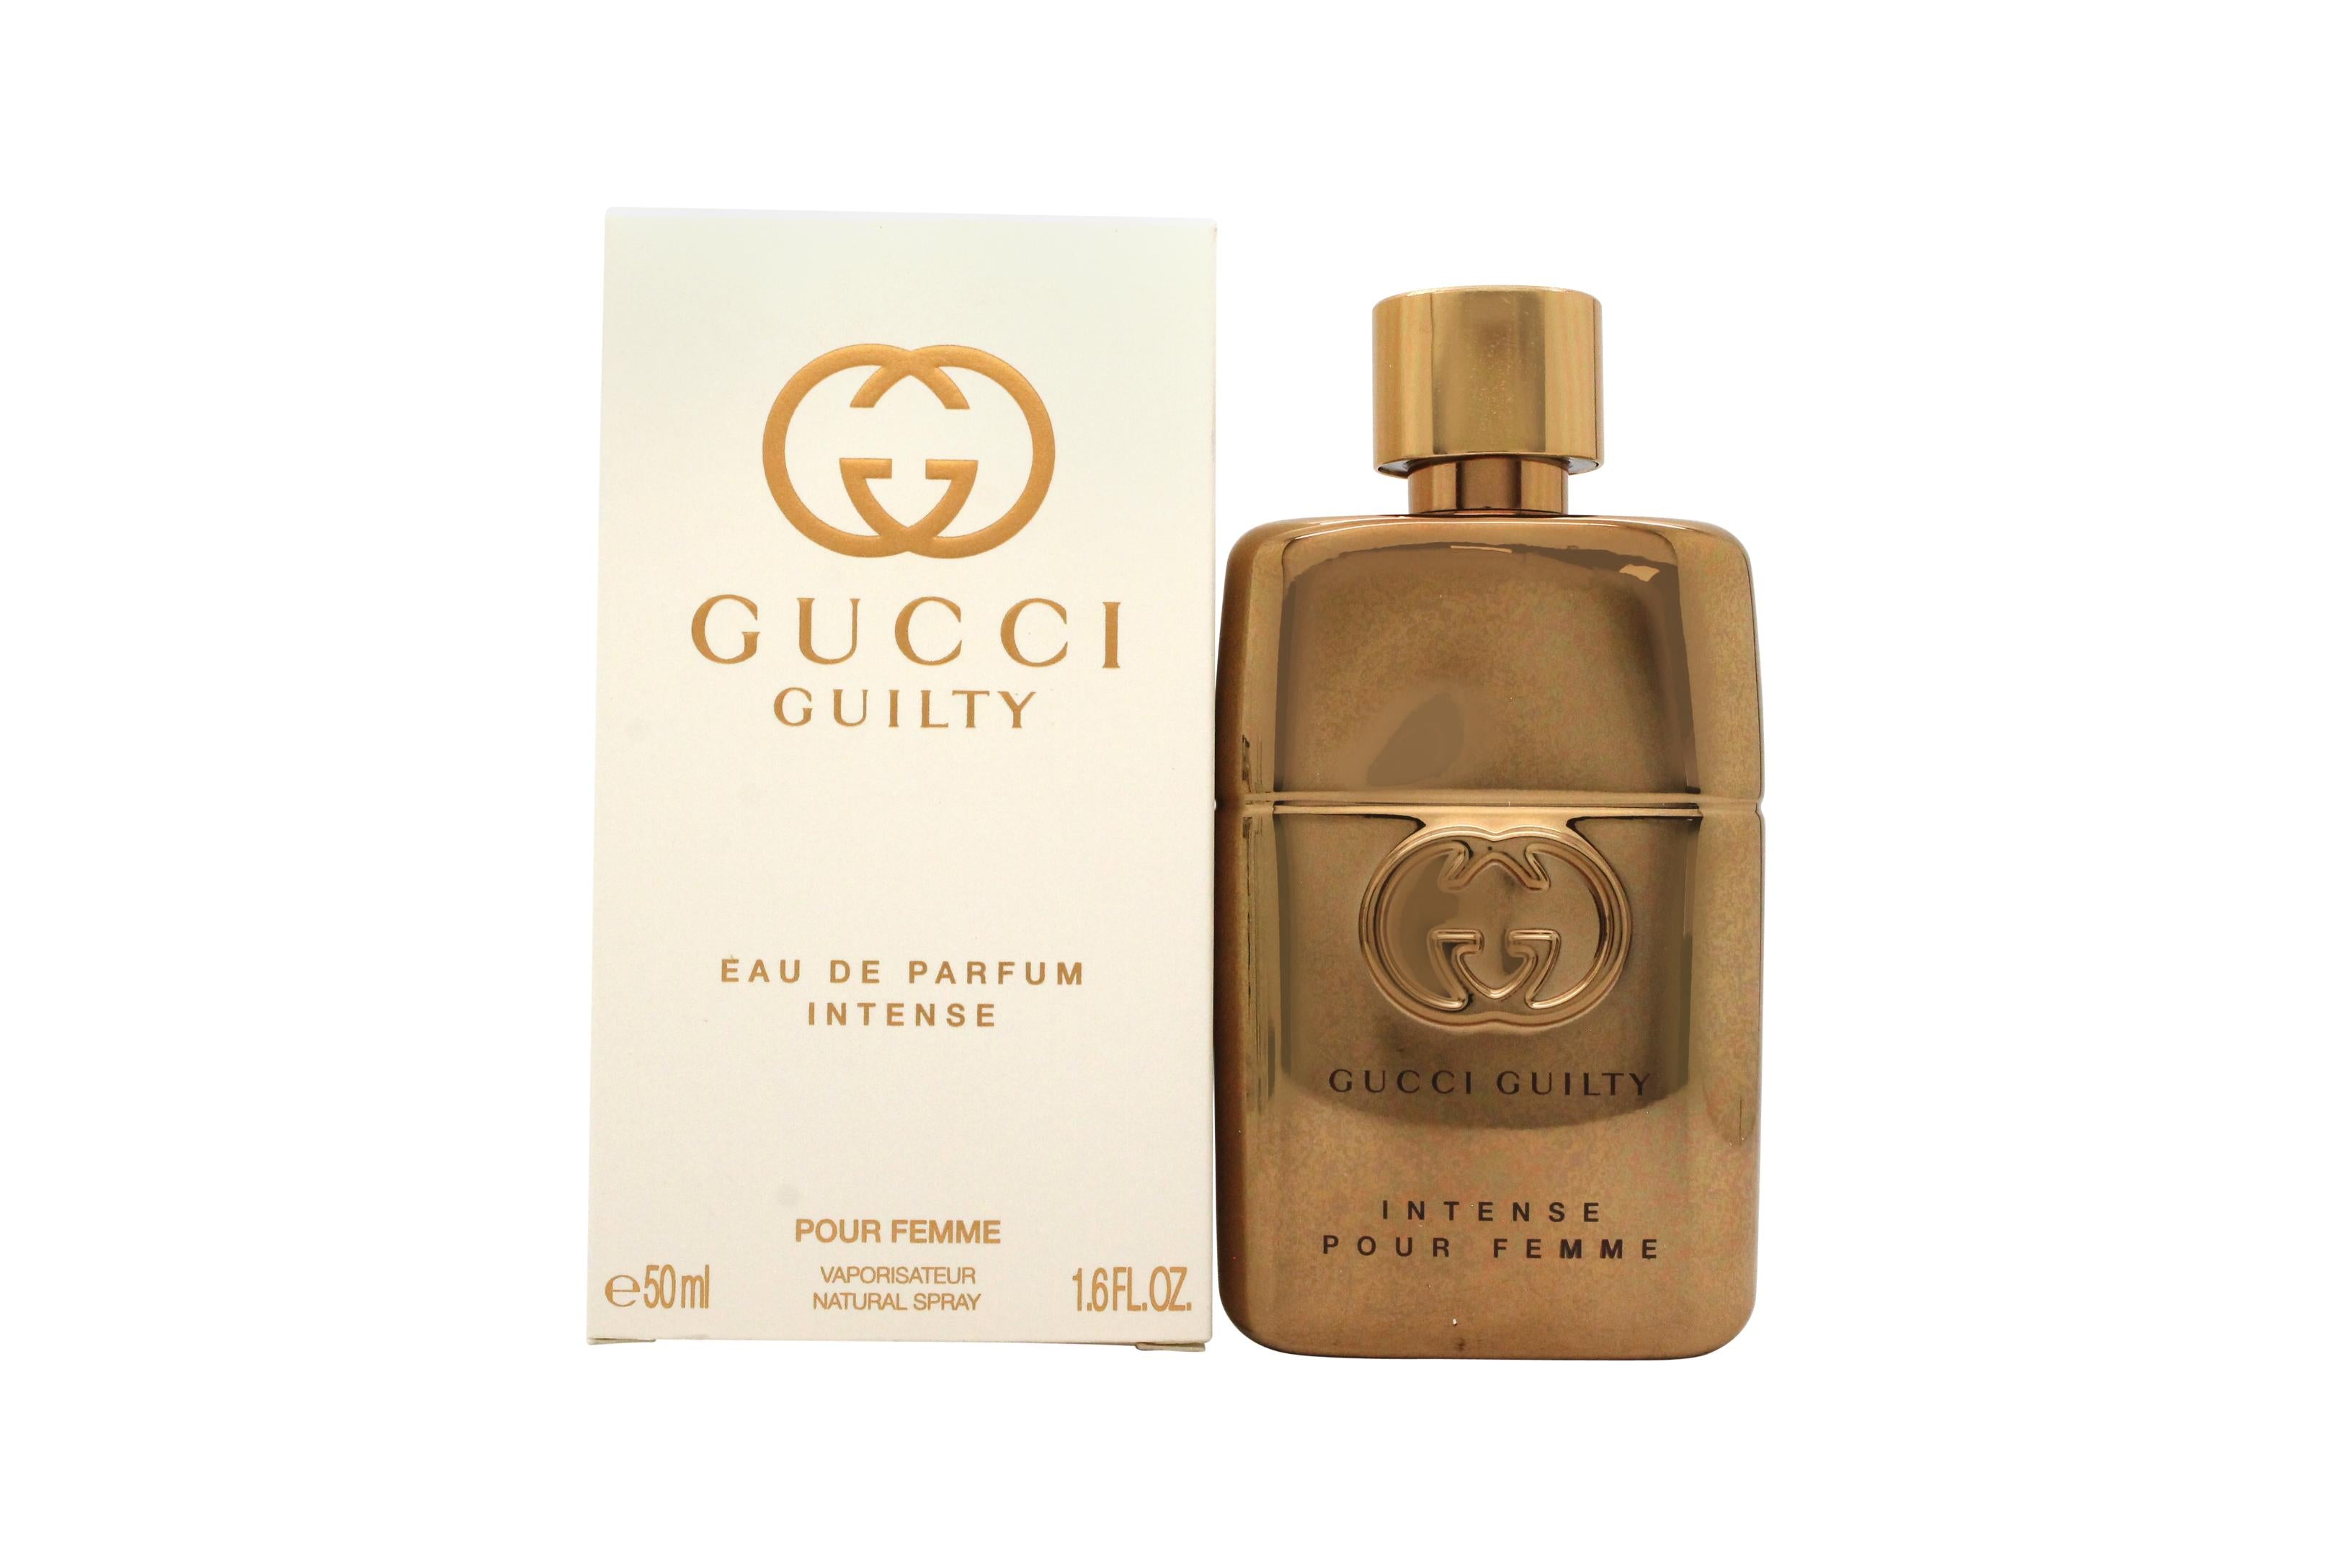 View Gucci Guilty Eau de Parfum Intense Pour Femme 50ml Spray information